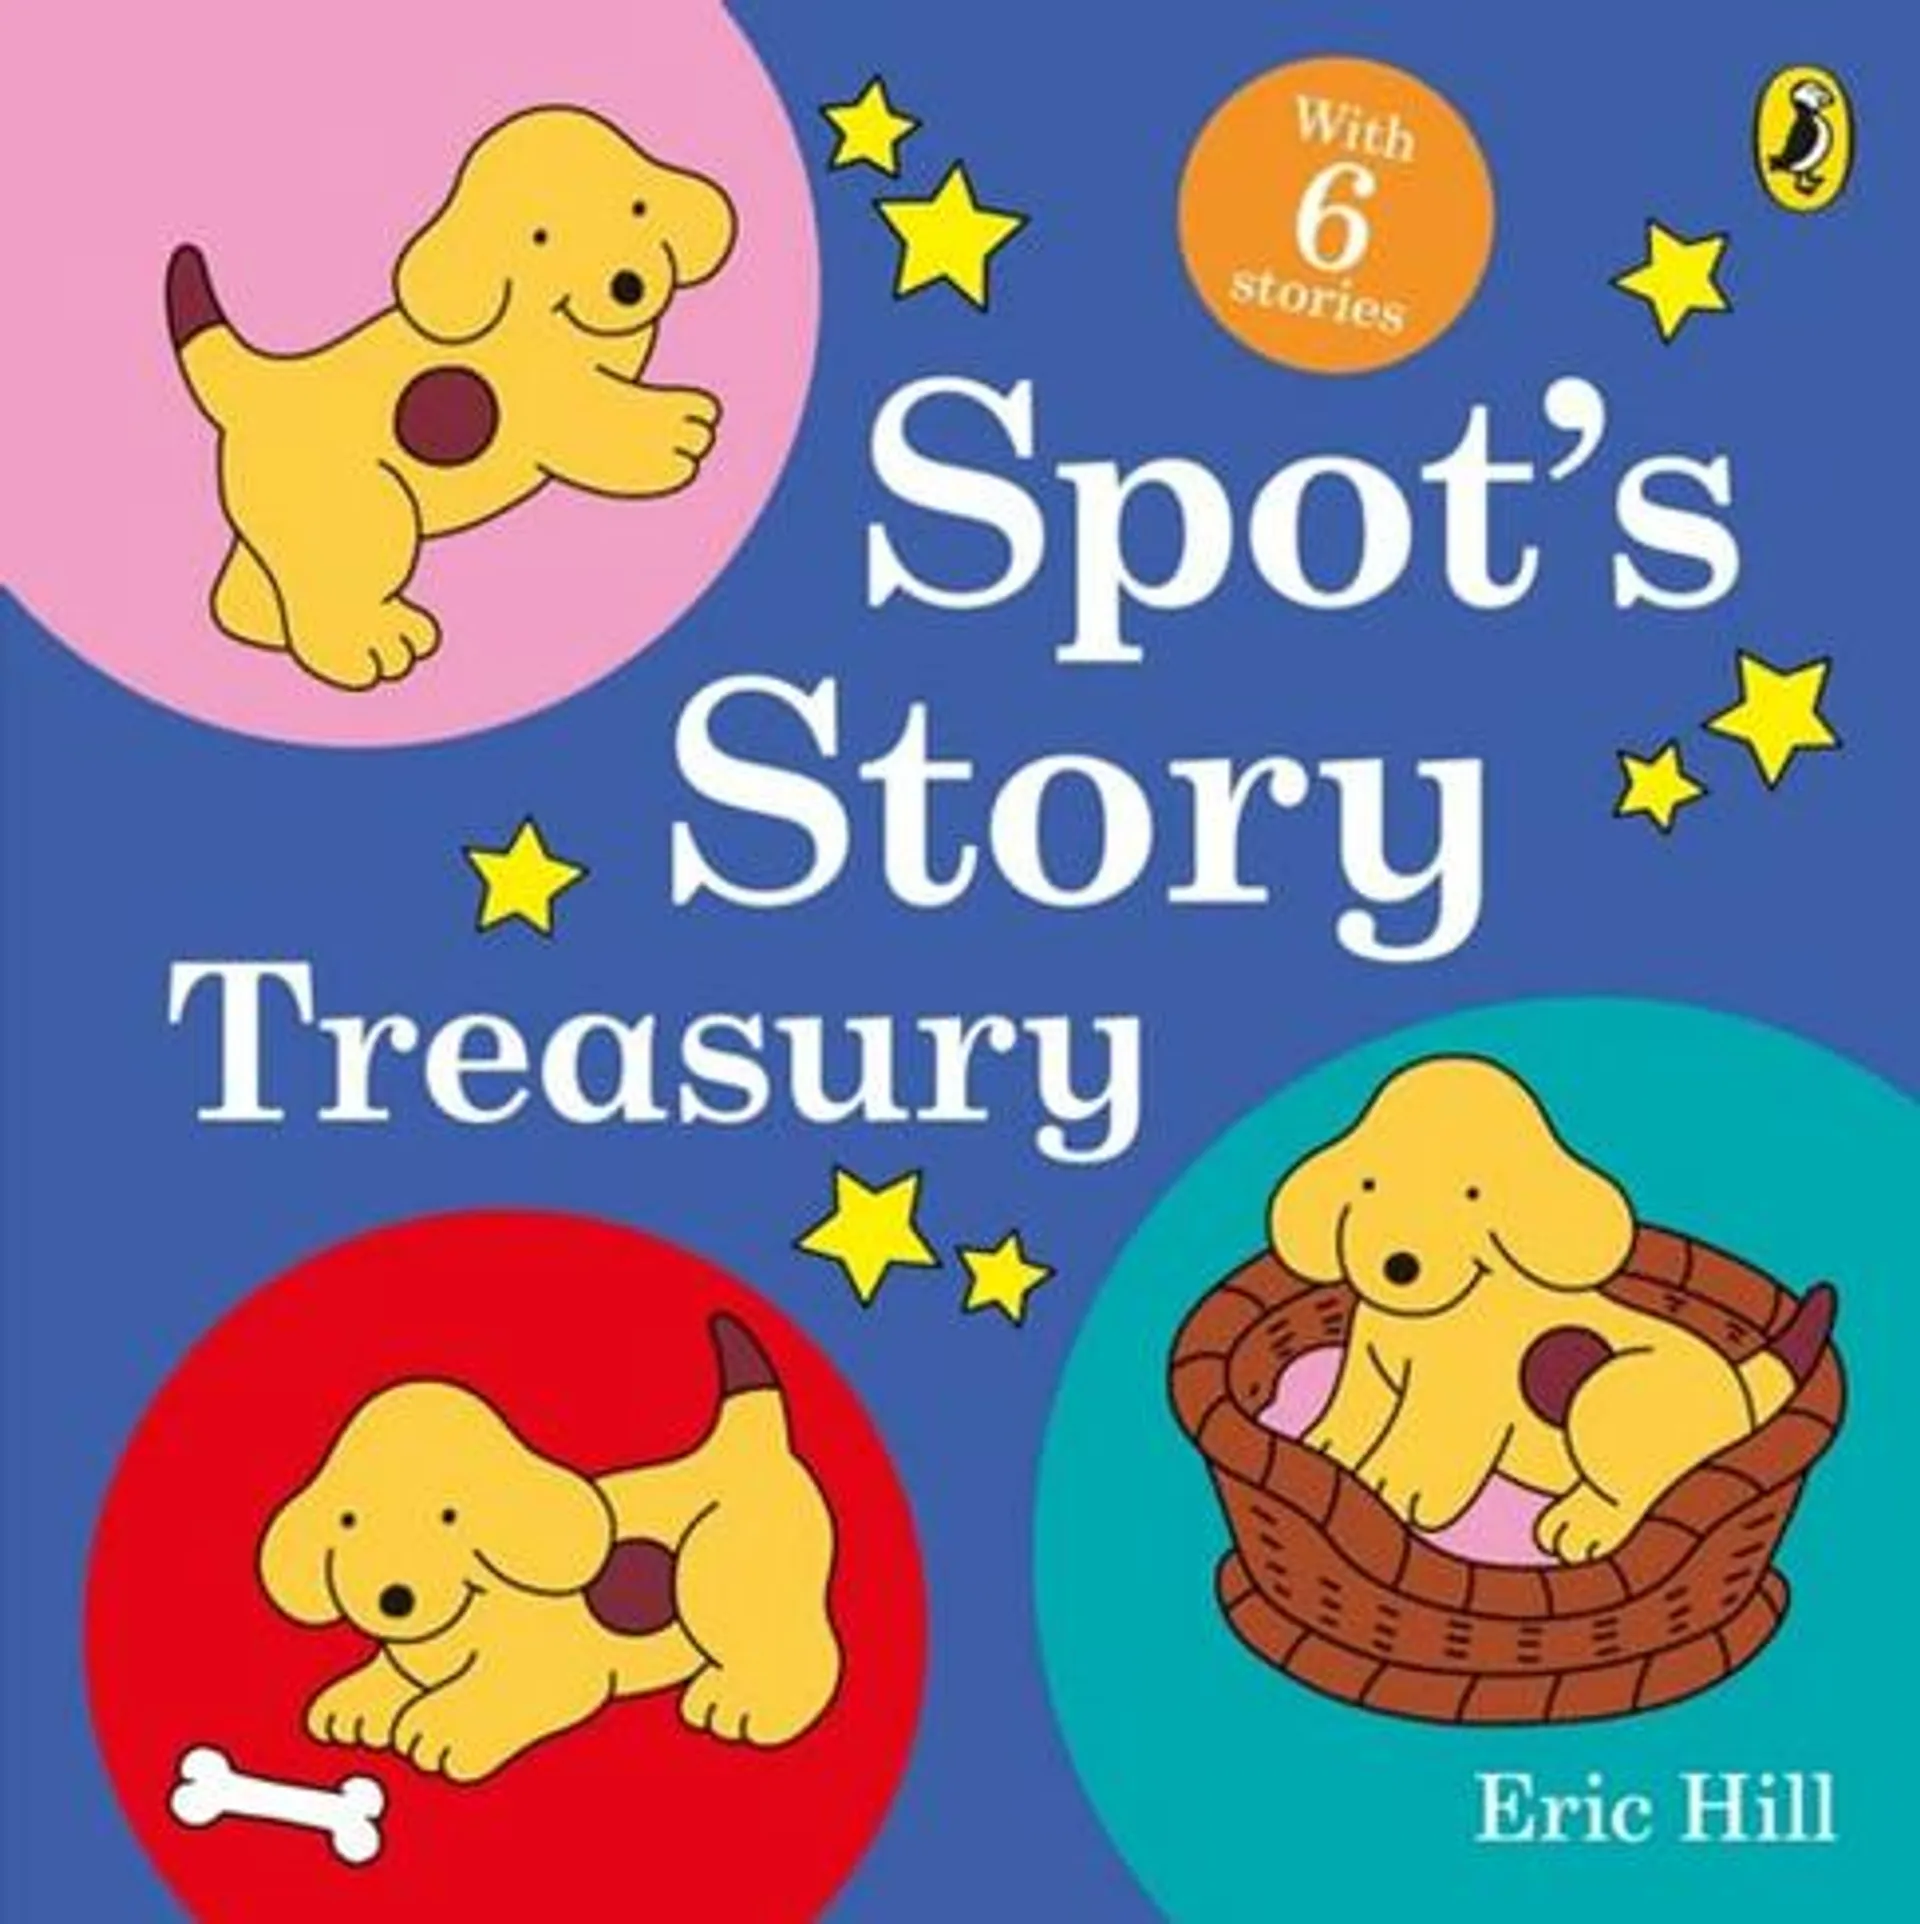 Spot's Story Treasury